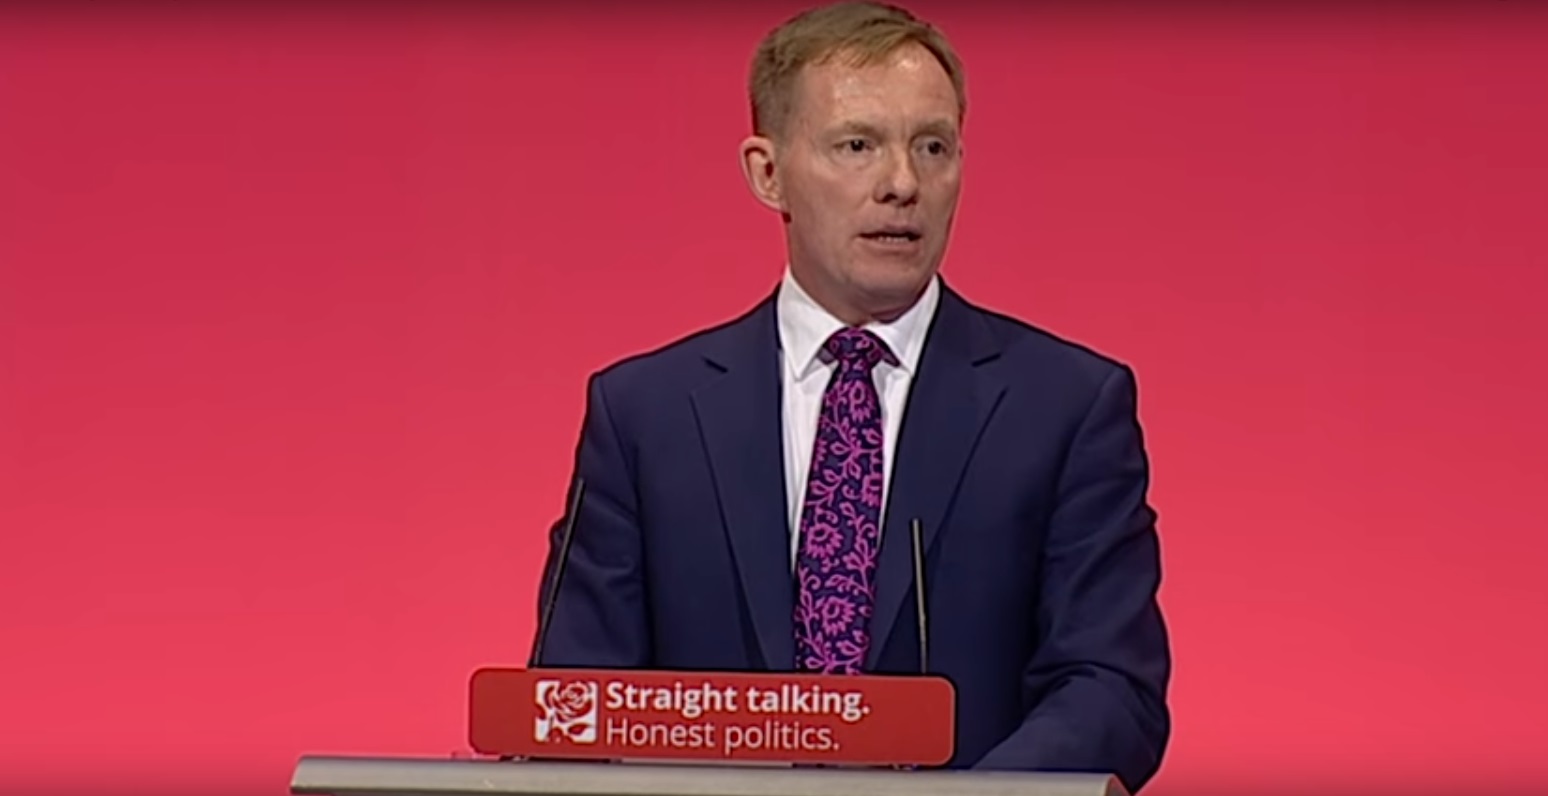 Labour MP Chris Bryant spoke about his experiences